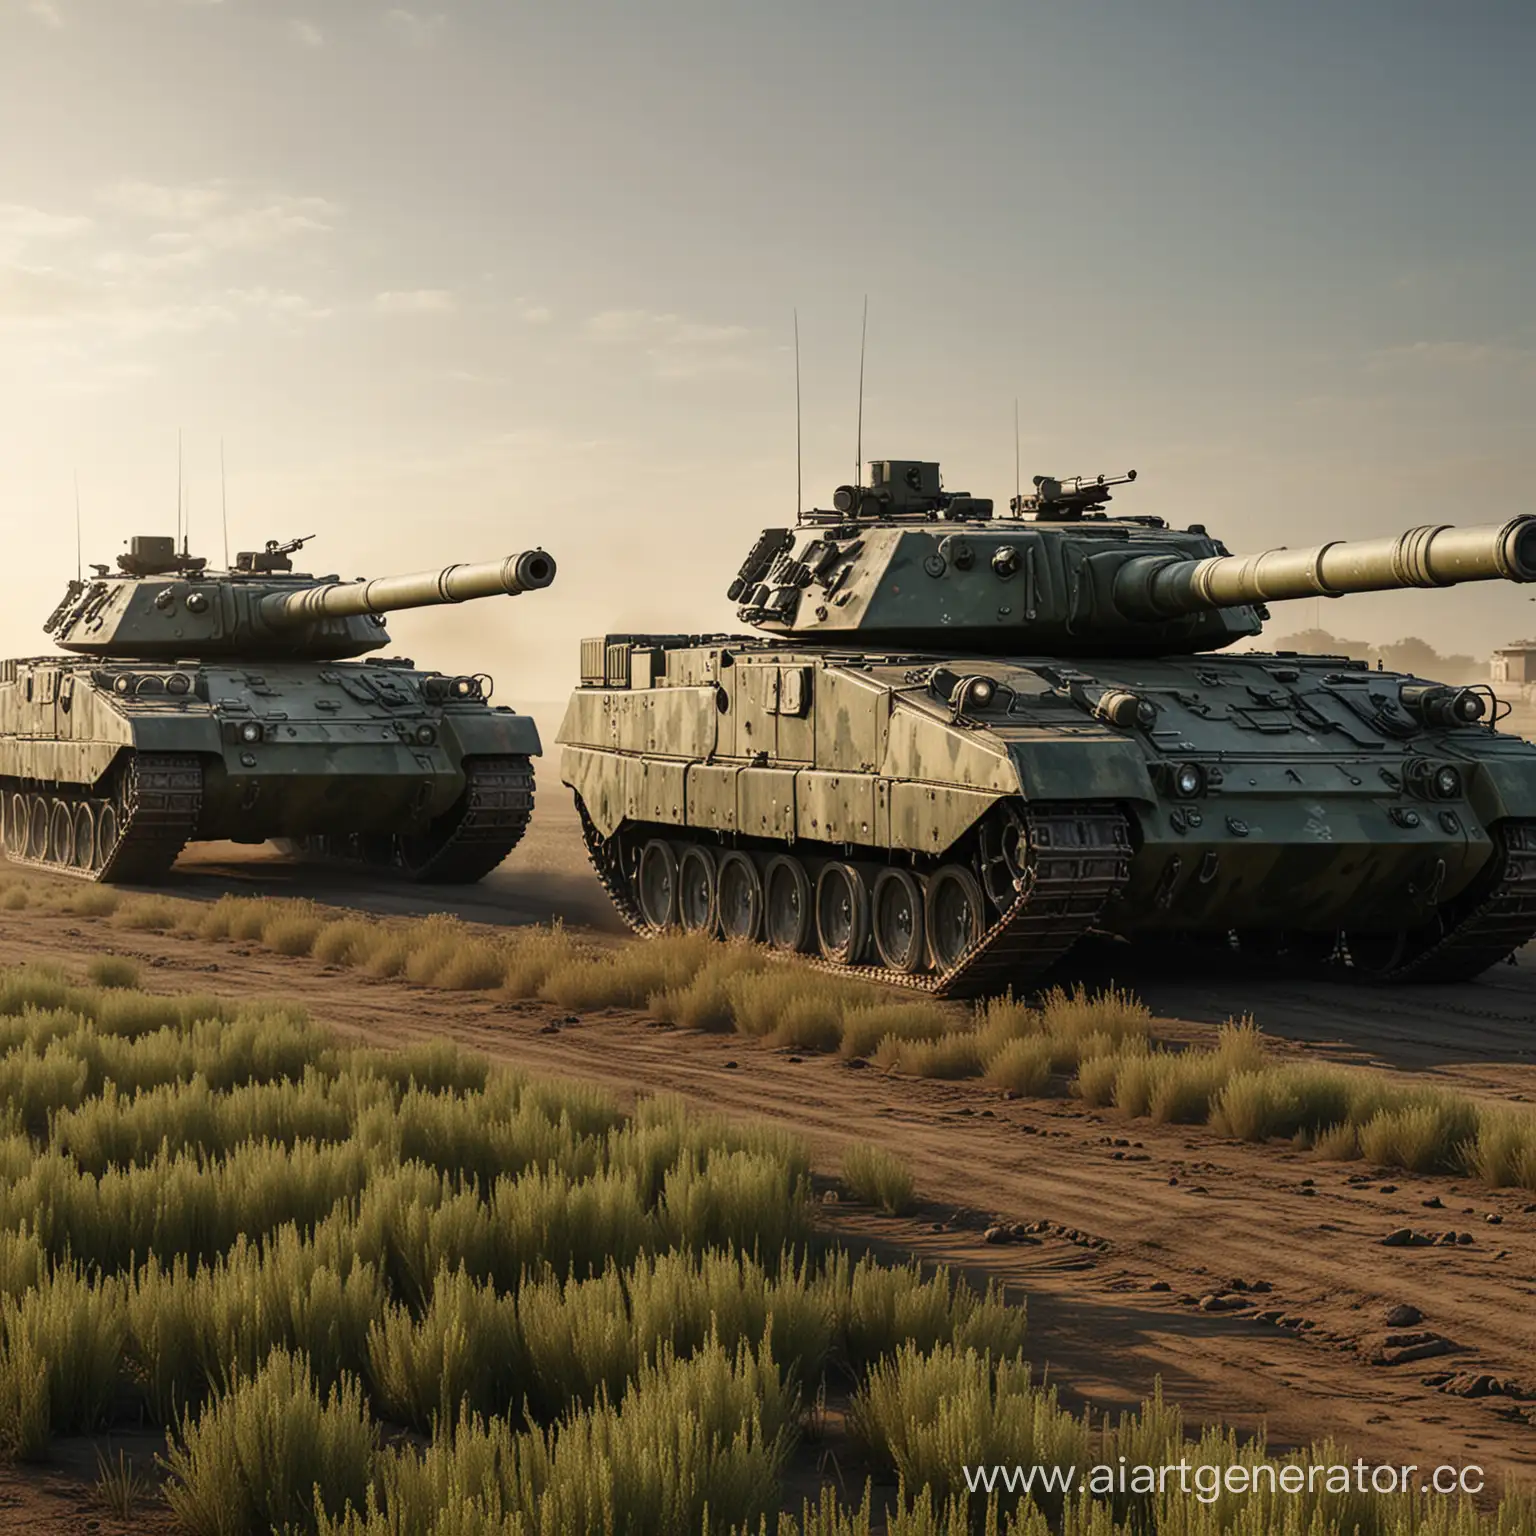 два современных танка с камуфляжем в движении по полю, HD, ультрареалистичный, эпический, вид сбоку, объемное освещение
